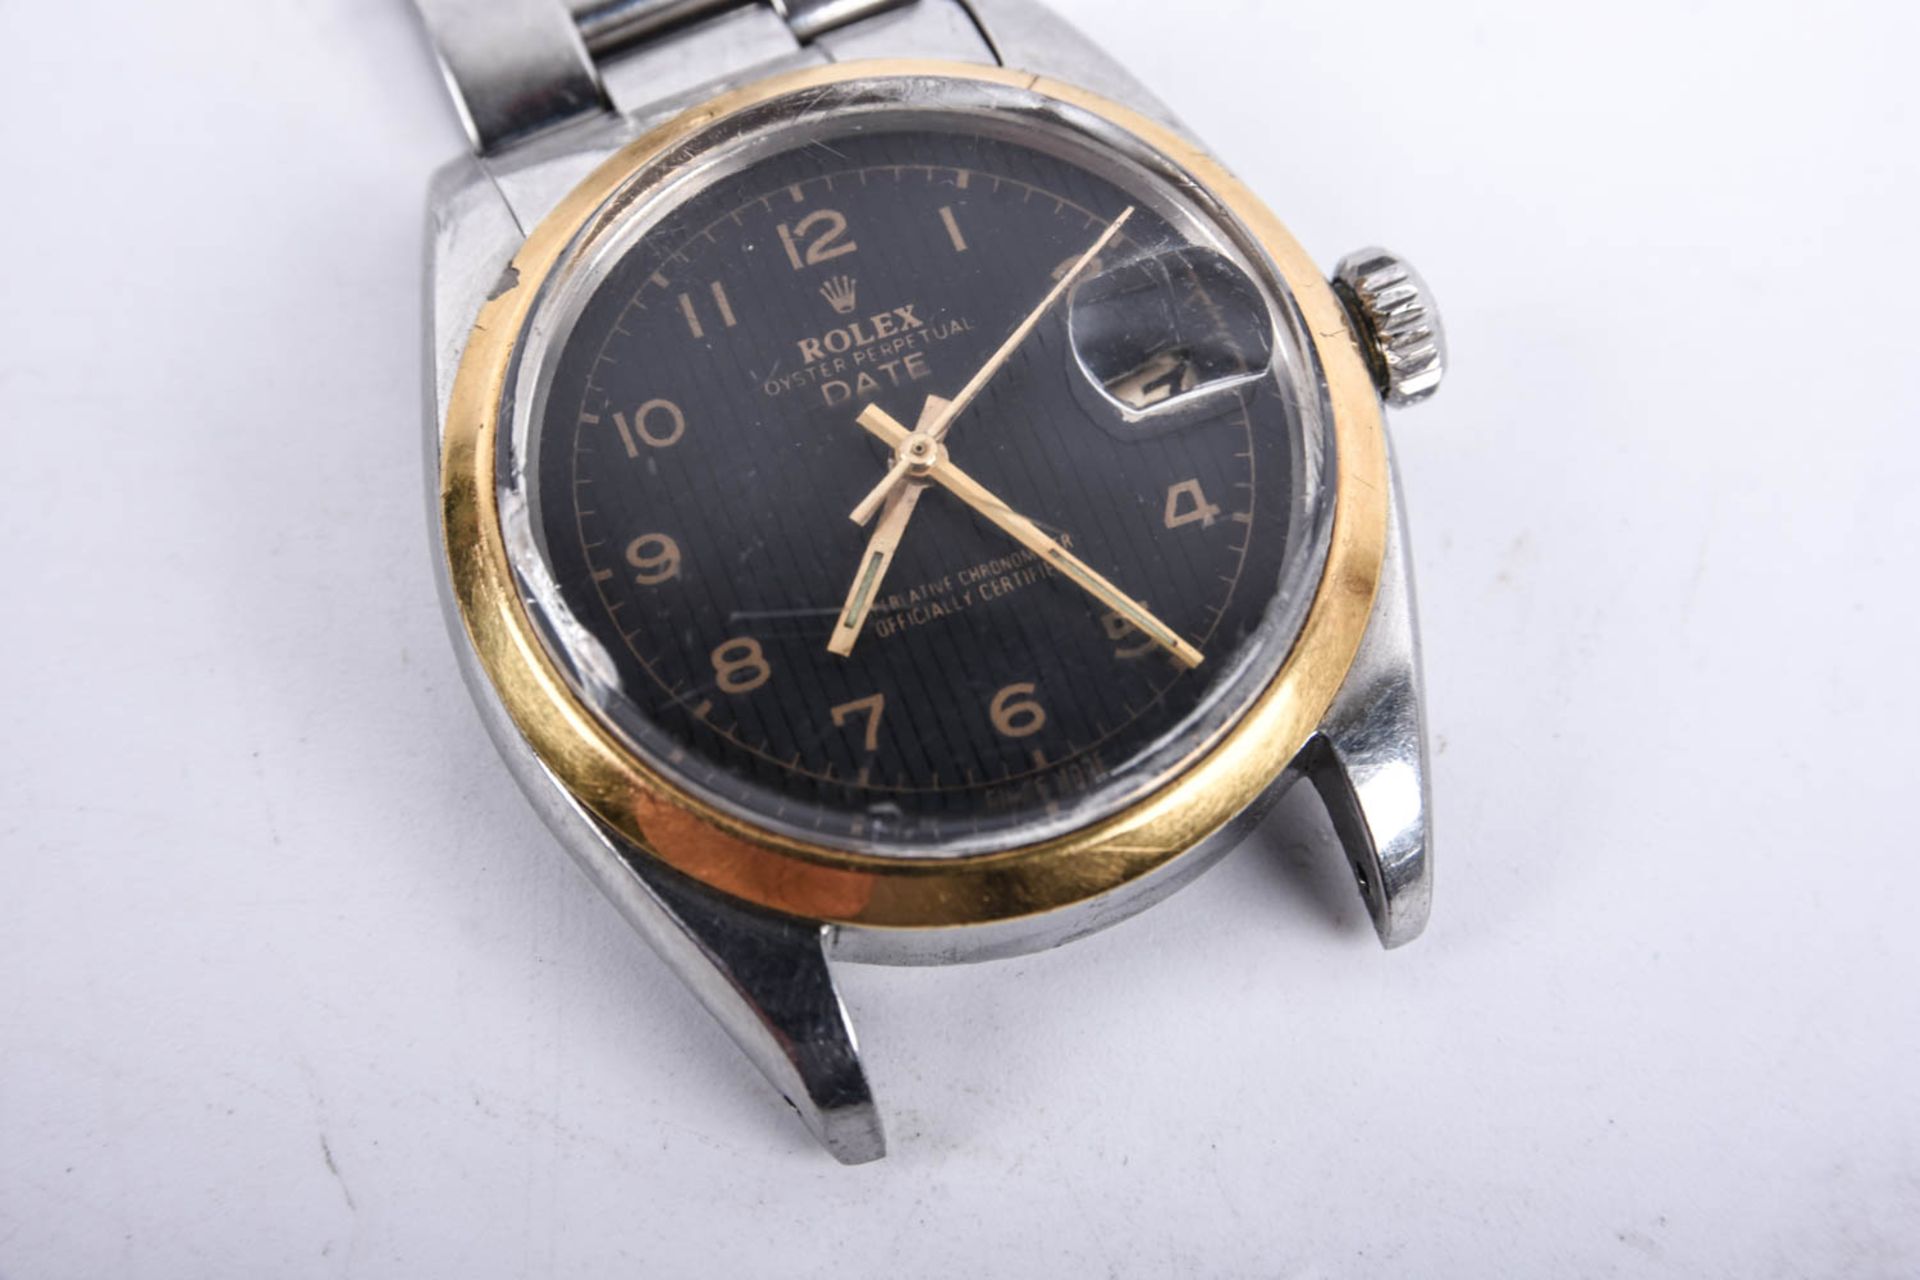 Rolex Cyster Perpetual Date Herrenuhr, 1940er Jahre, Ref. 1500 - Bild 5 aus 12